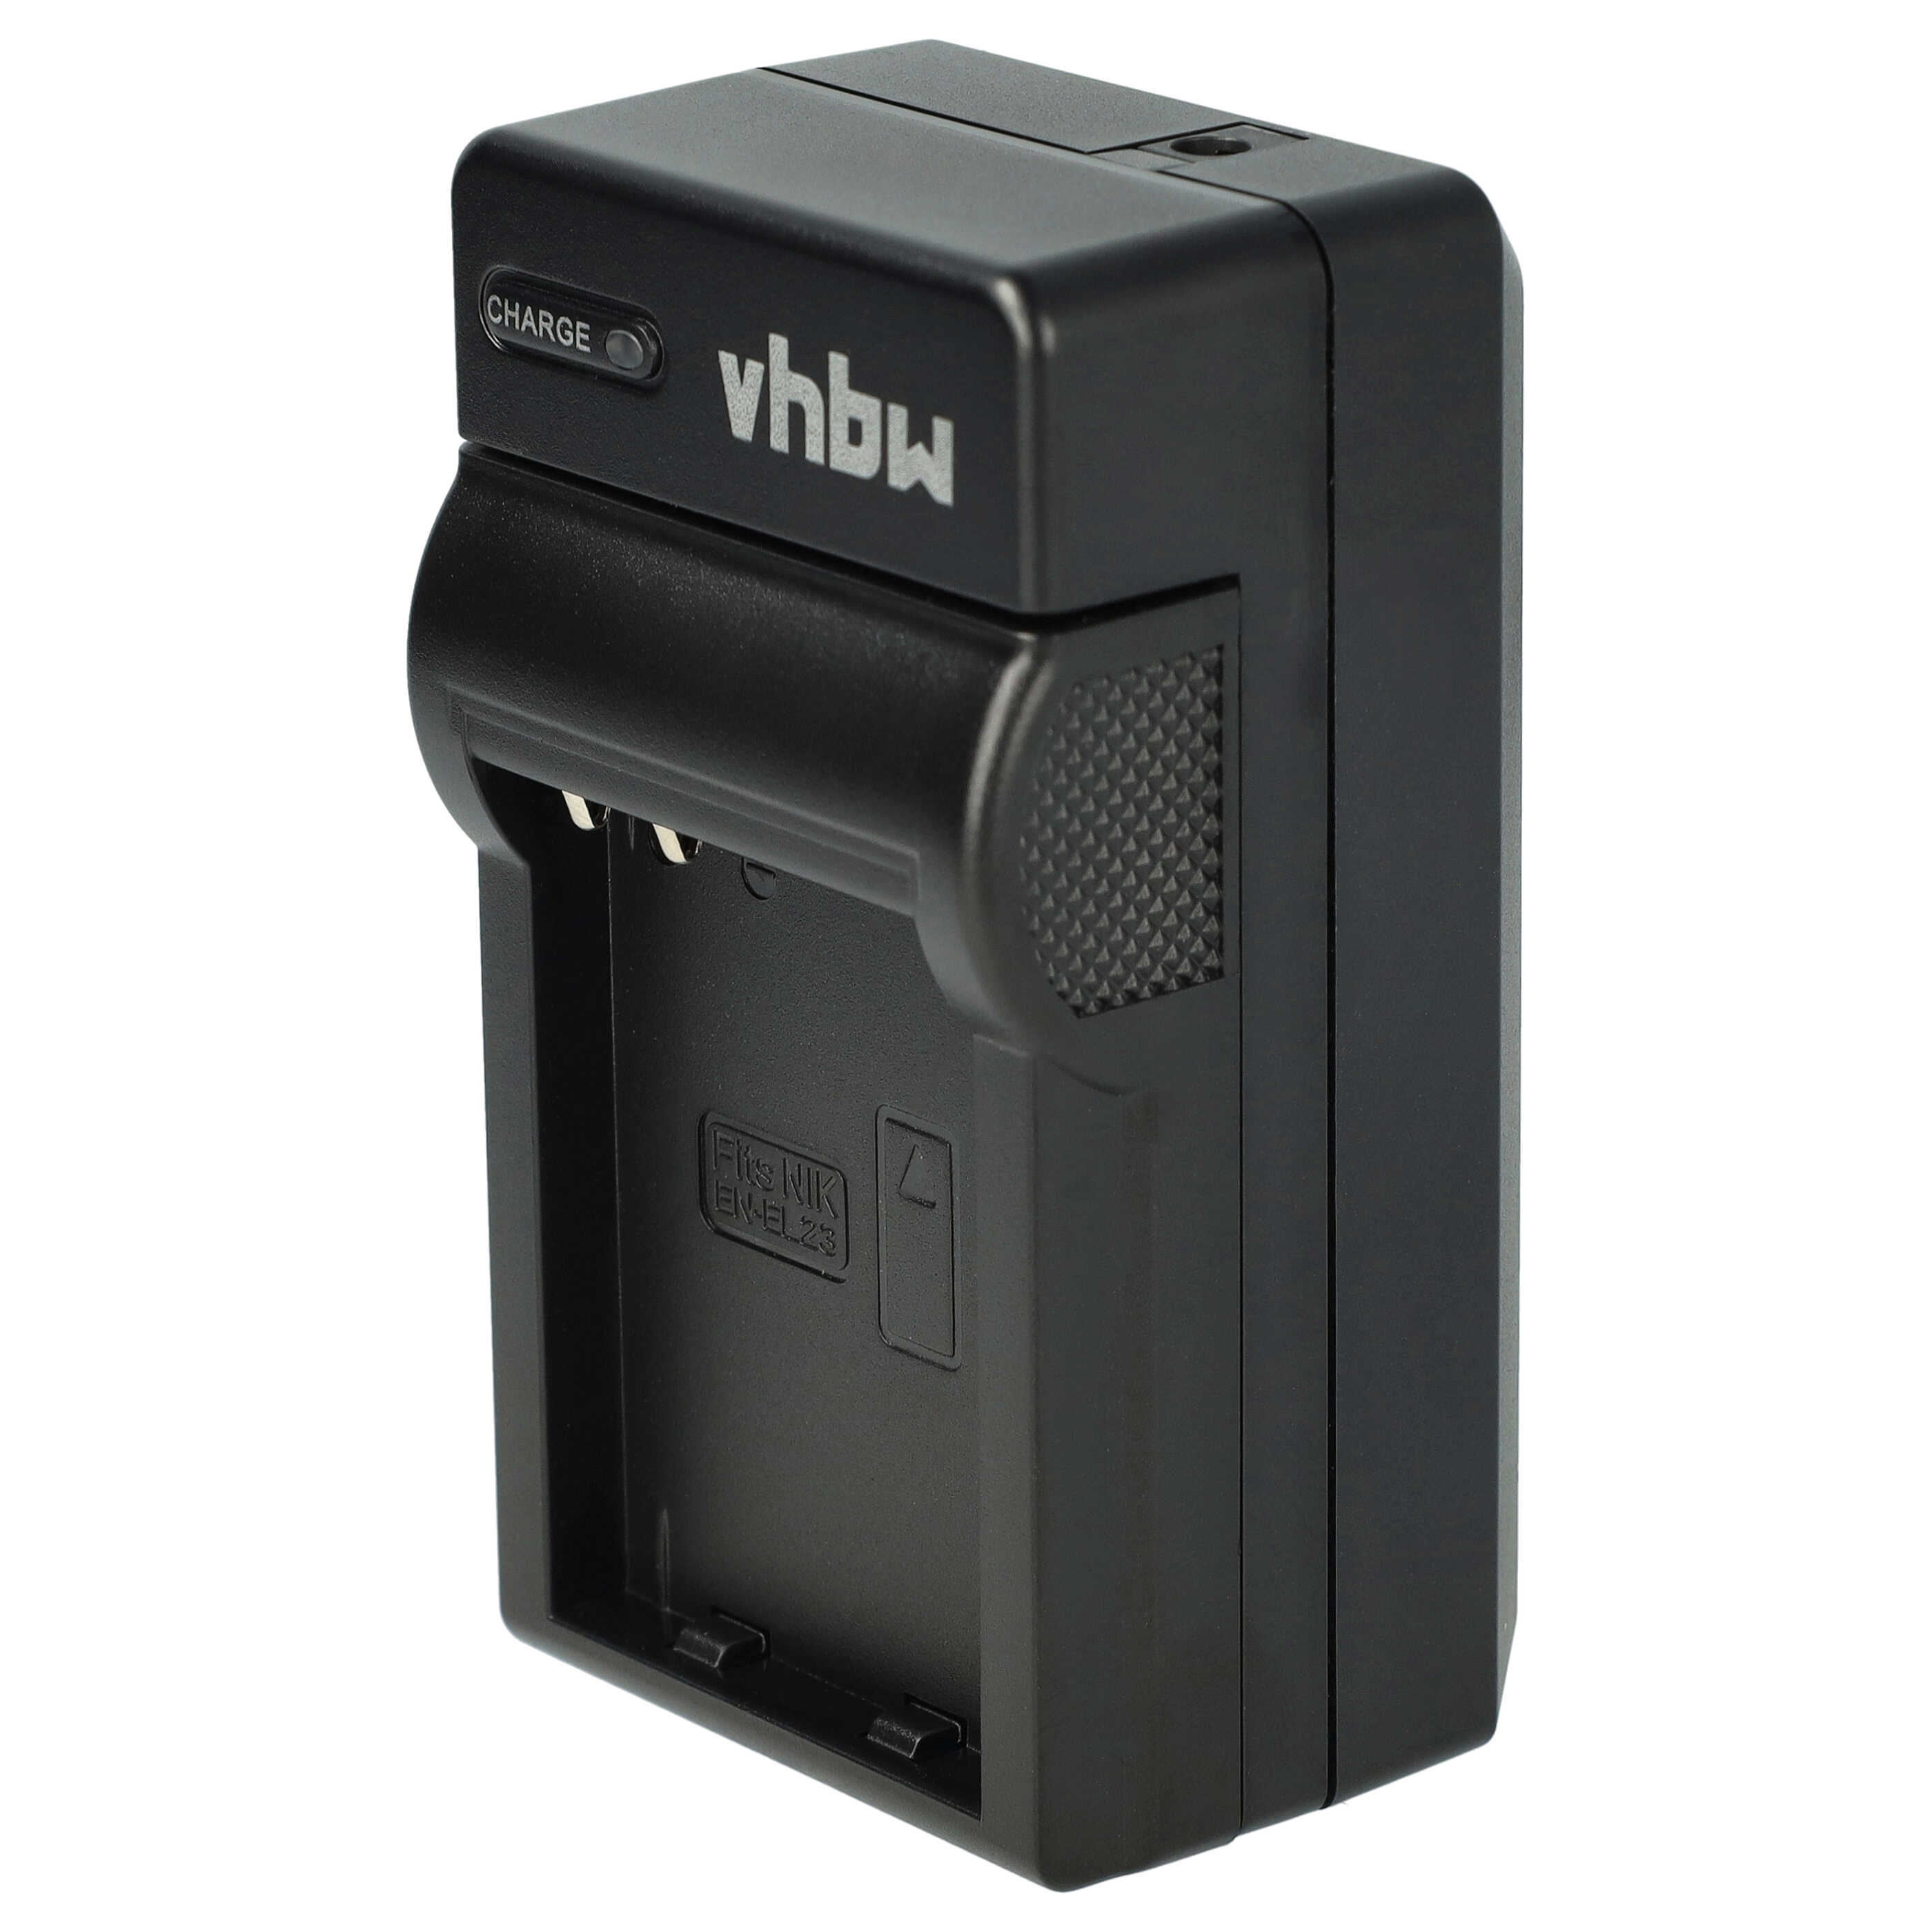 Akku Ladegerät passend für Coolpix P600 Kamera u.a. - 0,6 A, 4,35 V